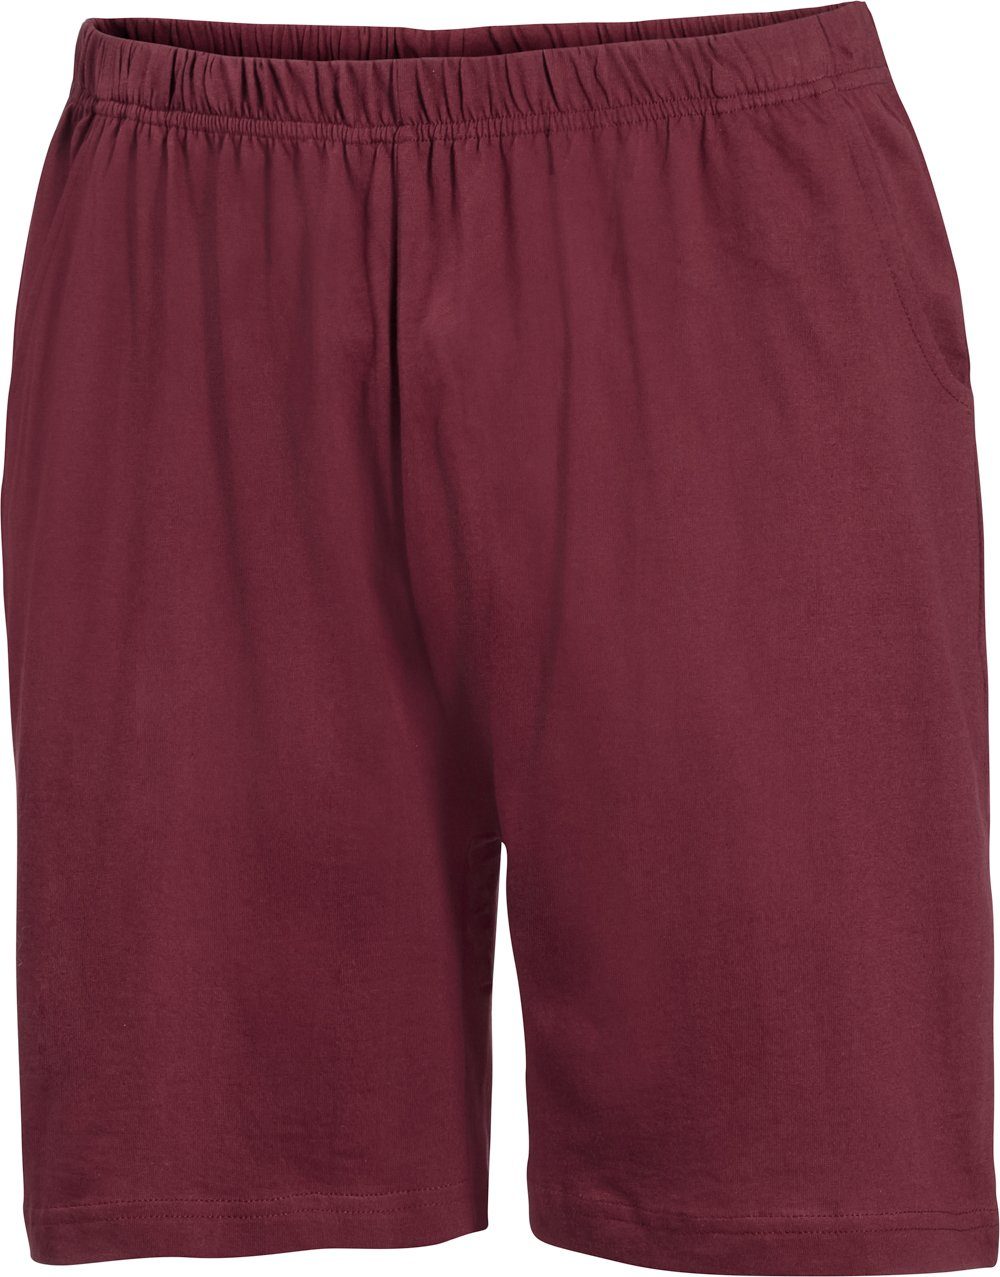 Wäsche/Bademode Nachtwäsche Franco Bettoni Pyjama (Set, T-Shirt und Shorts) aus reiner Baumwolle, absolut bequem und weich